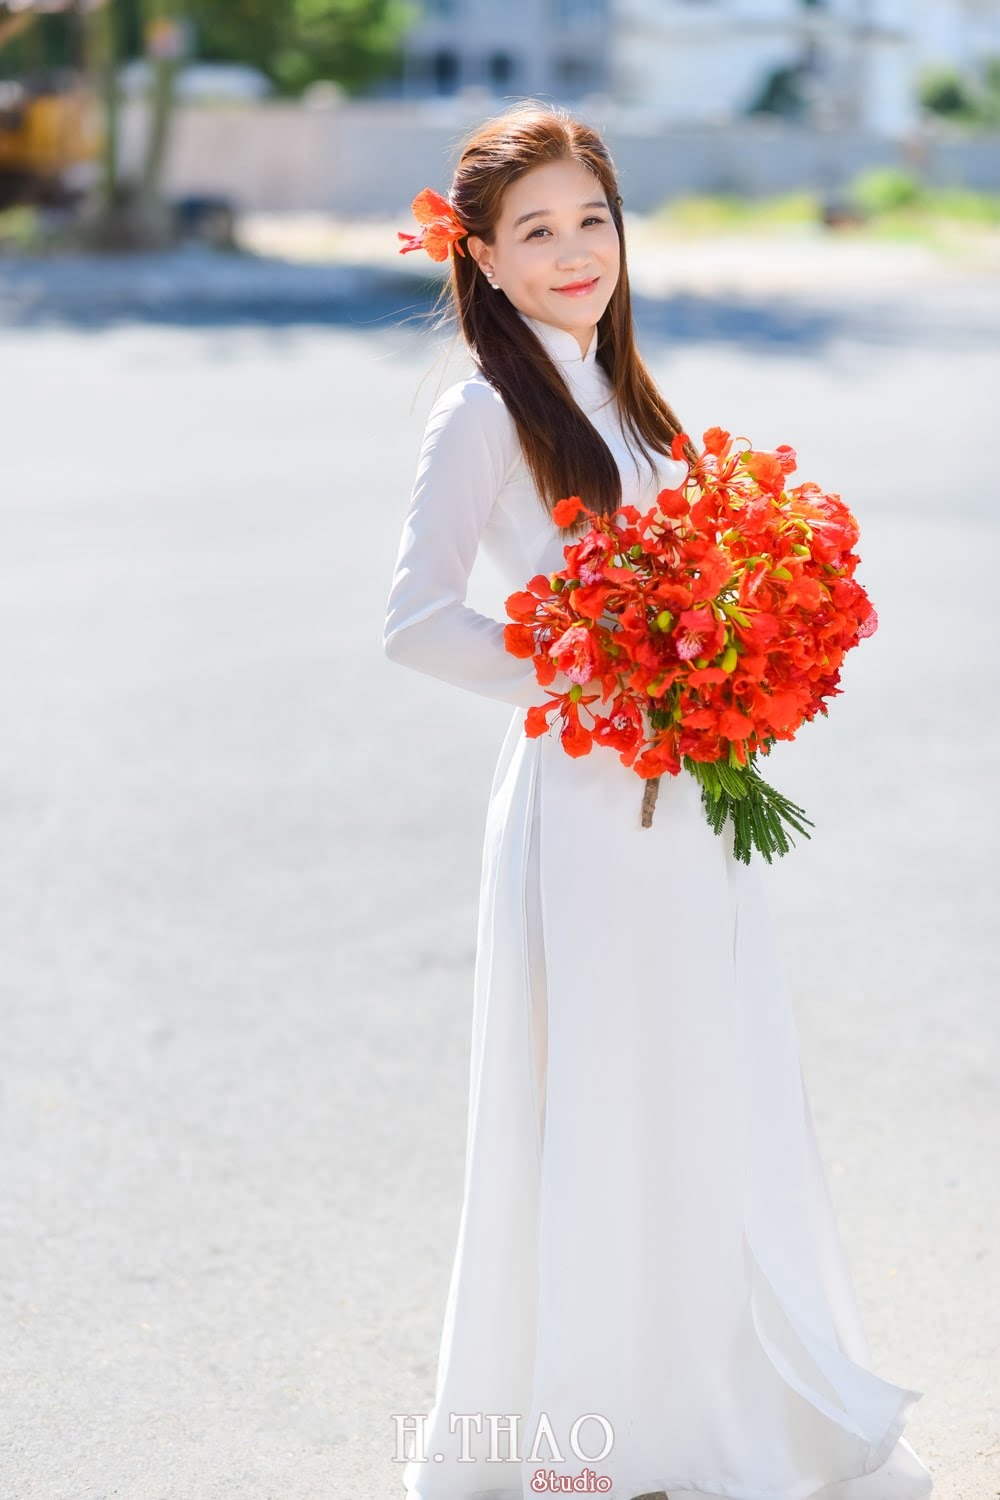 Anh hoa phuong 17 min - Bộ ảnh couple chụp với hoa phượng tuyệt đẹp - HThao Studio